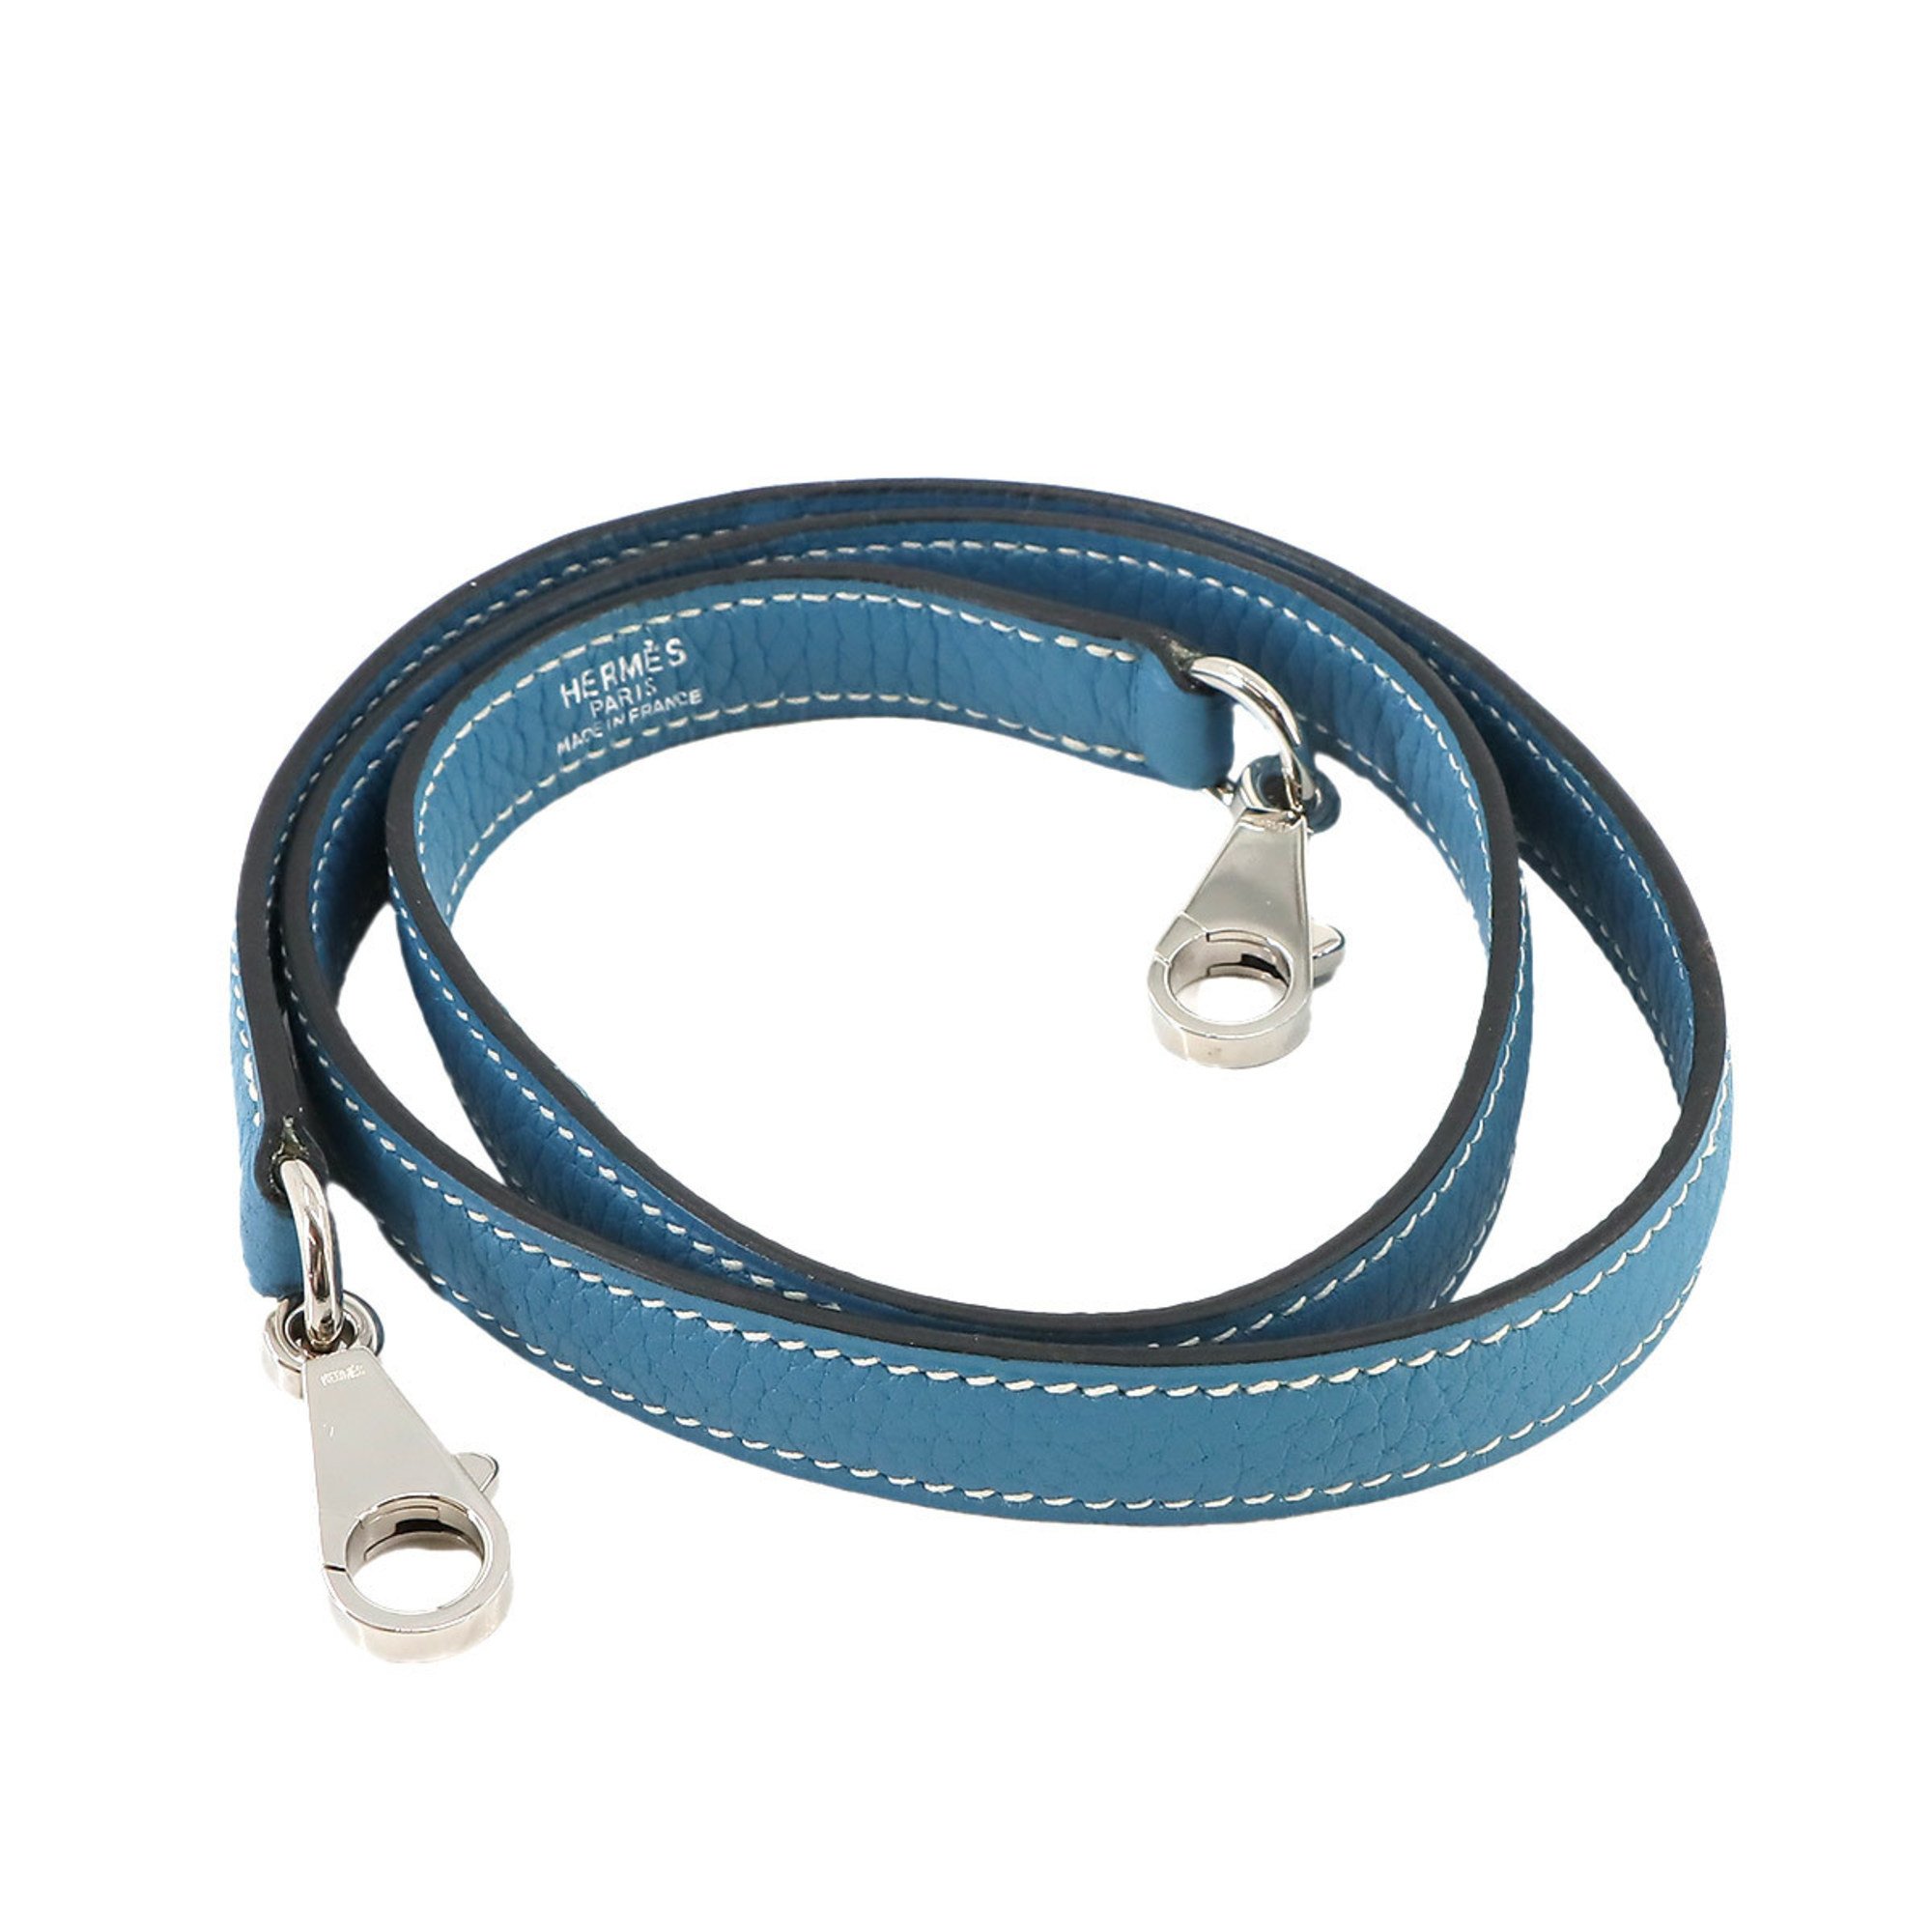 Hermes shoulder strap, Taurillon Clemence, blue jean, silver hardware